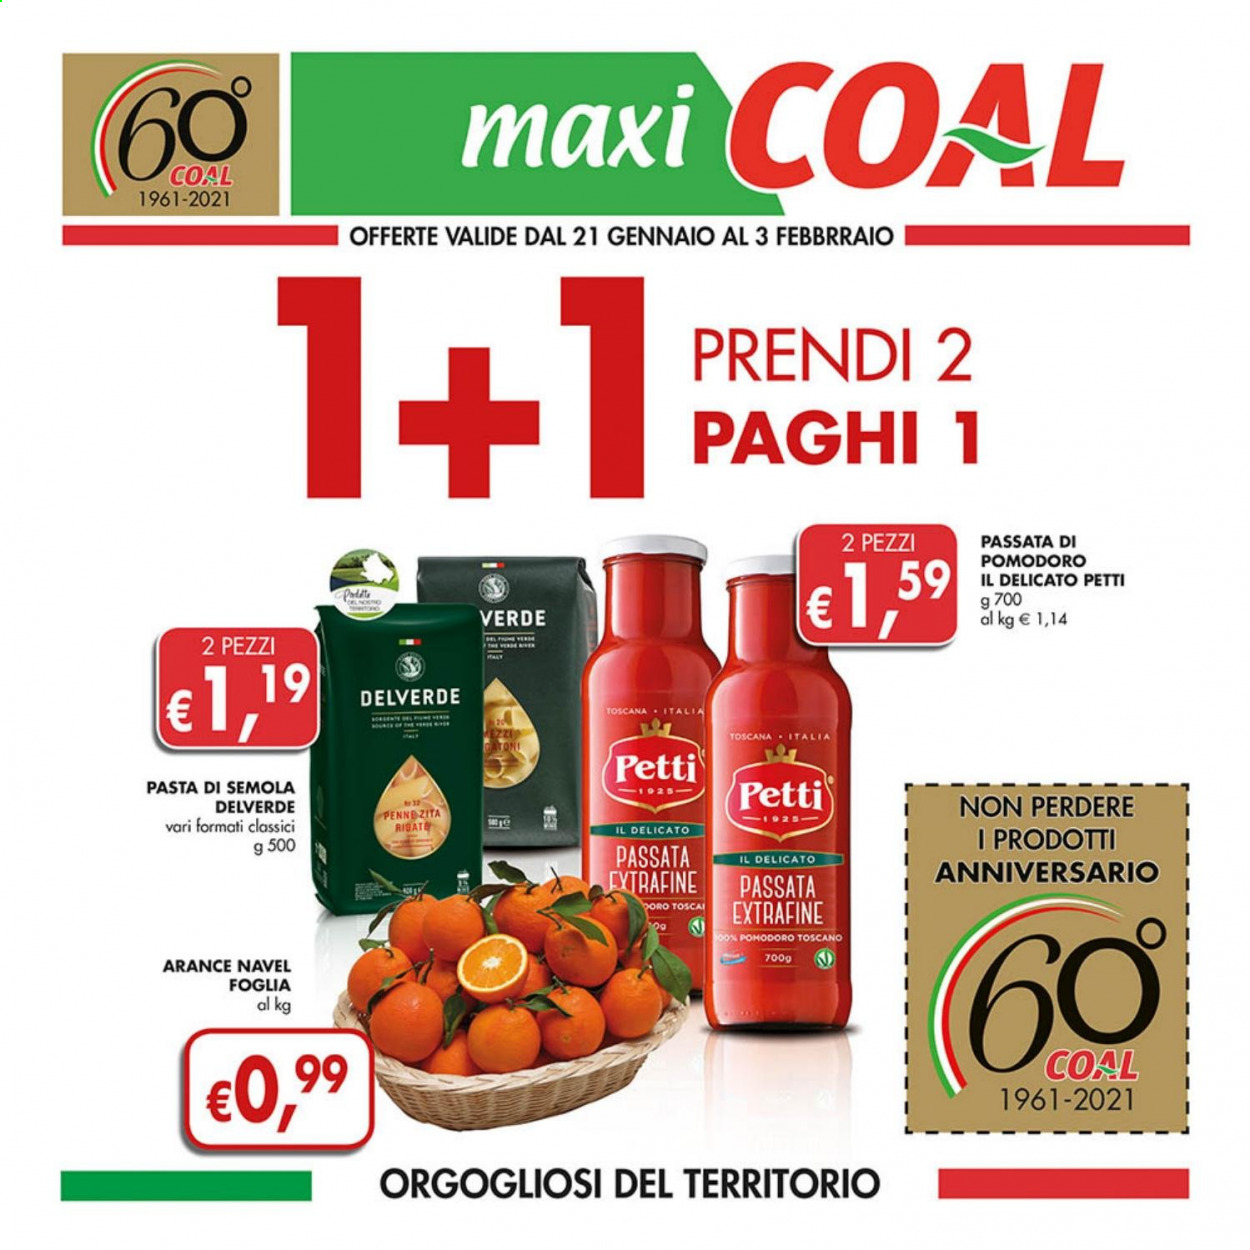 thumbnail - Volantino COAL - 21/1/2021 - 3/2/2021 - Prodotti in offerta - arance, arancie Navel, passata di pomodoro, Petti, pasta, penne, Delverde. Pagina 1.